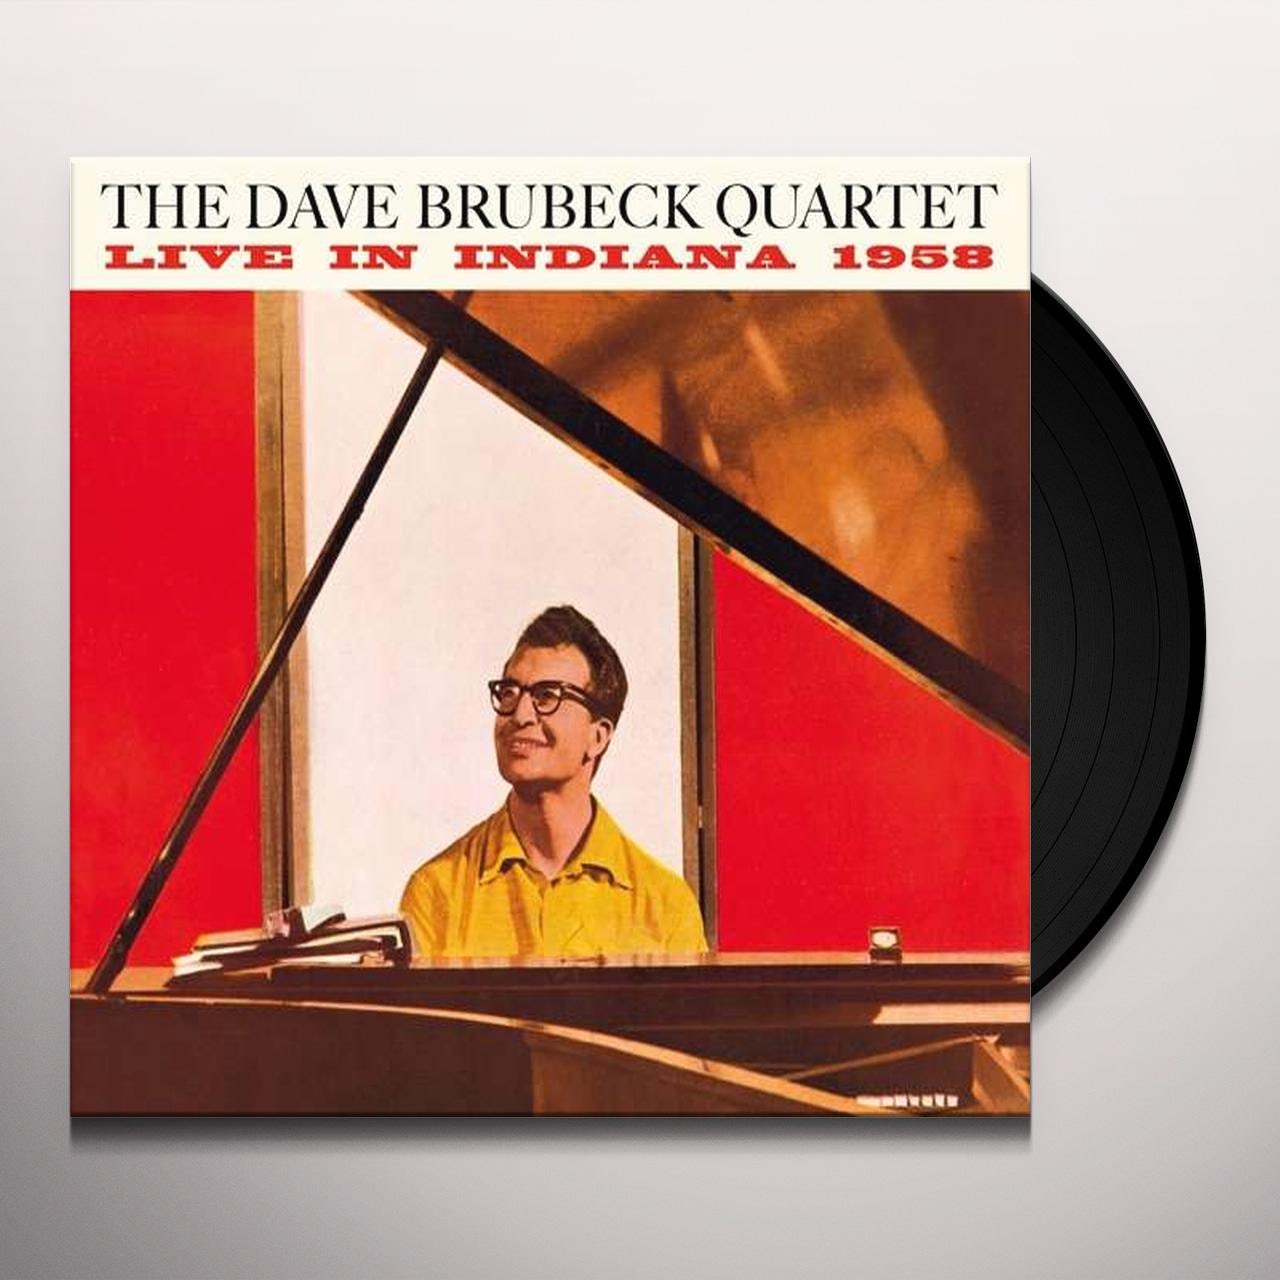 The Dave Brubeck Quartet - Live In Indiana 1958